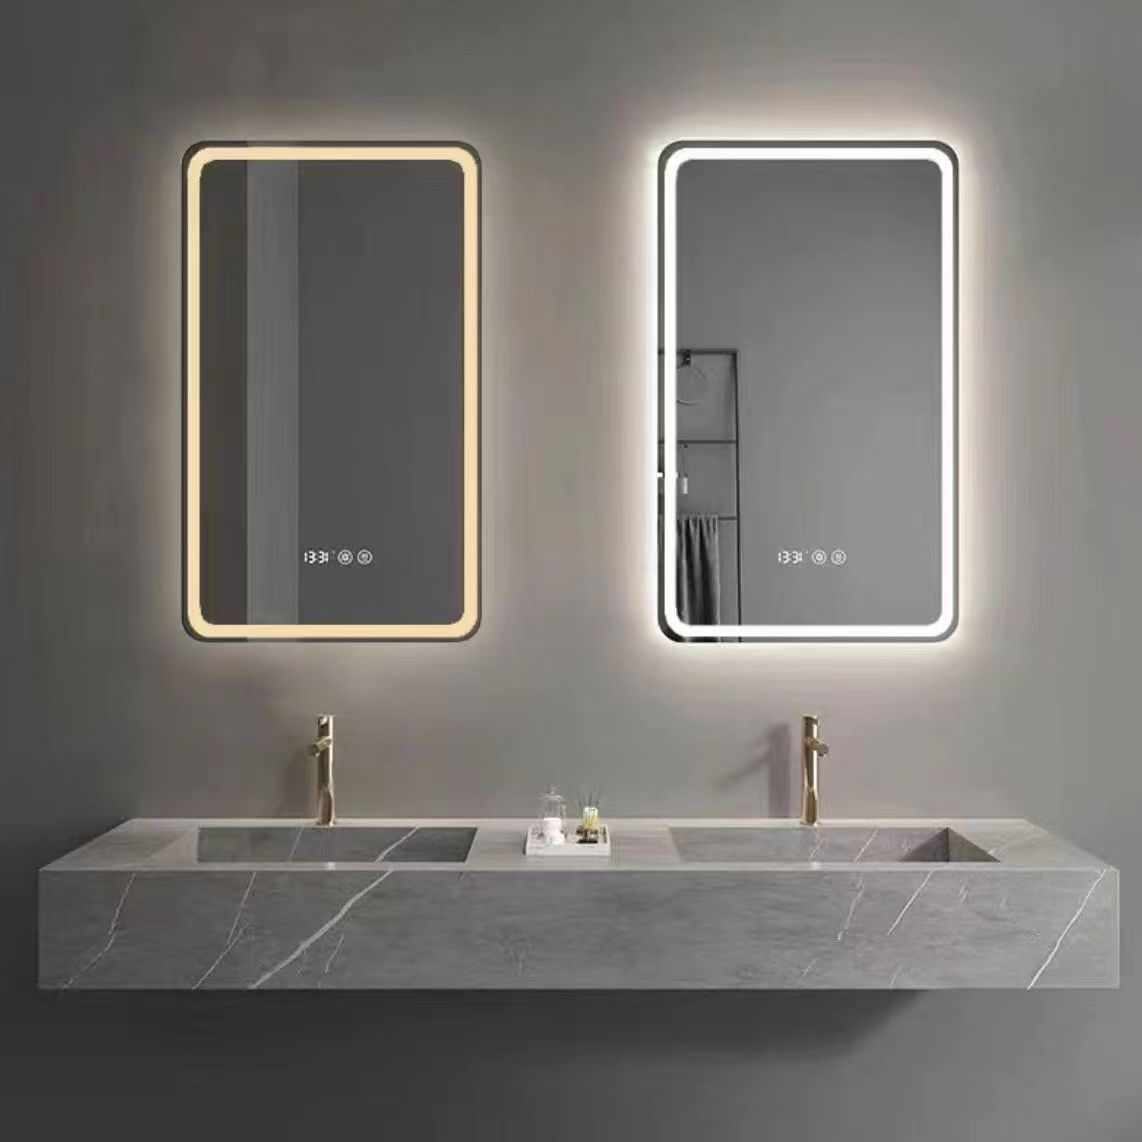 Badkamerspiegel, spiegel, ronde spiegel, rechthoekige spiegel